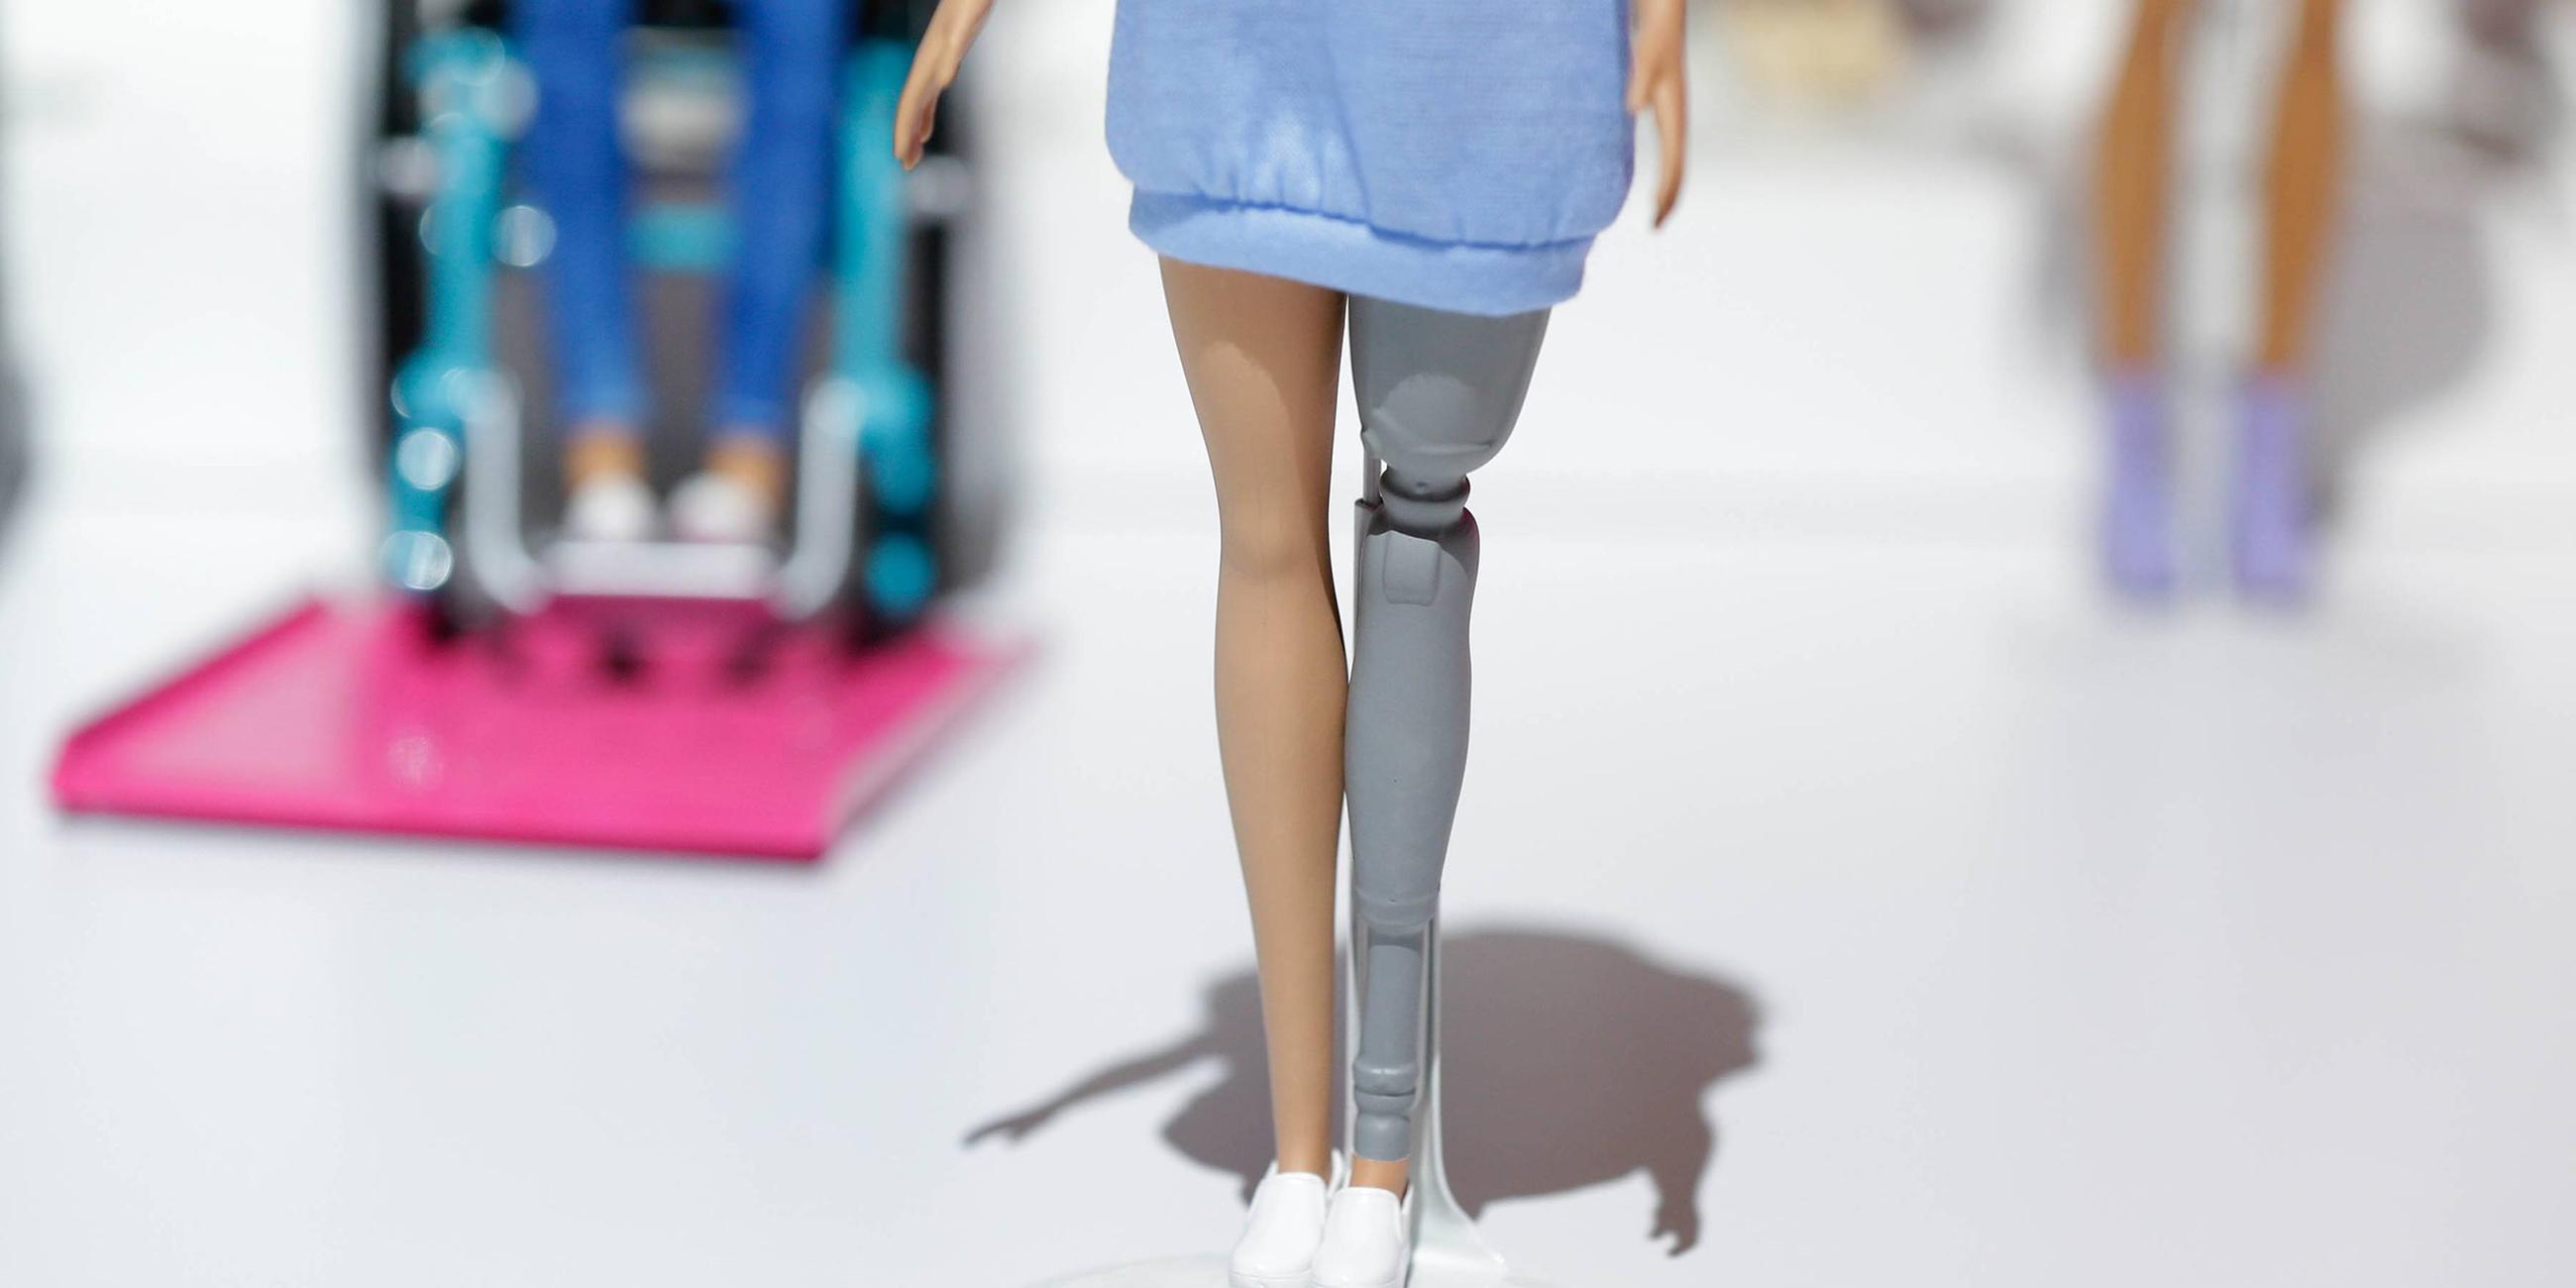 Das Bild zeigt eine Puppe mit einer Beinprothese.